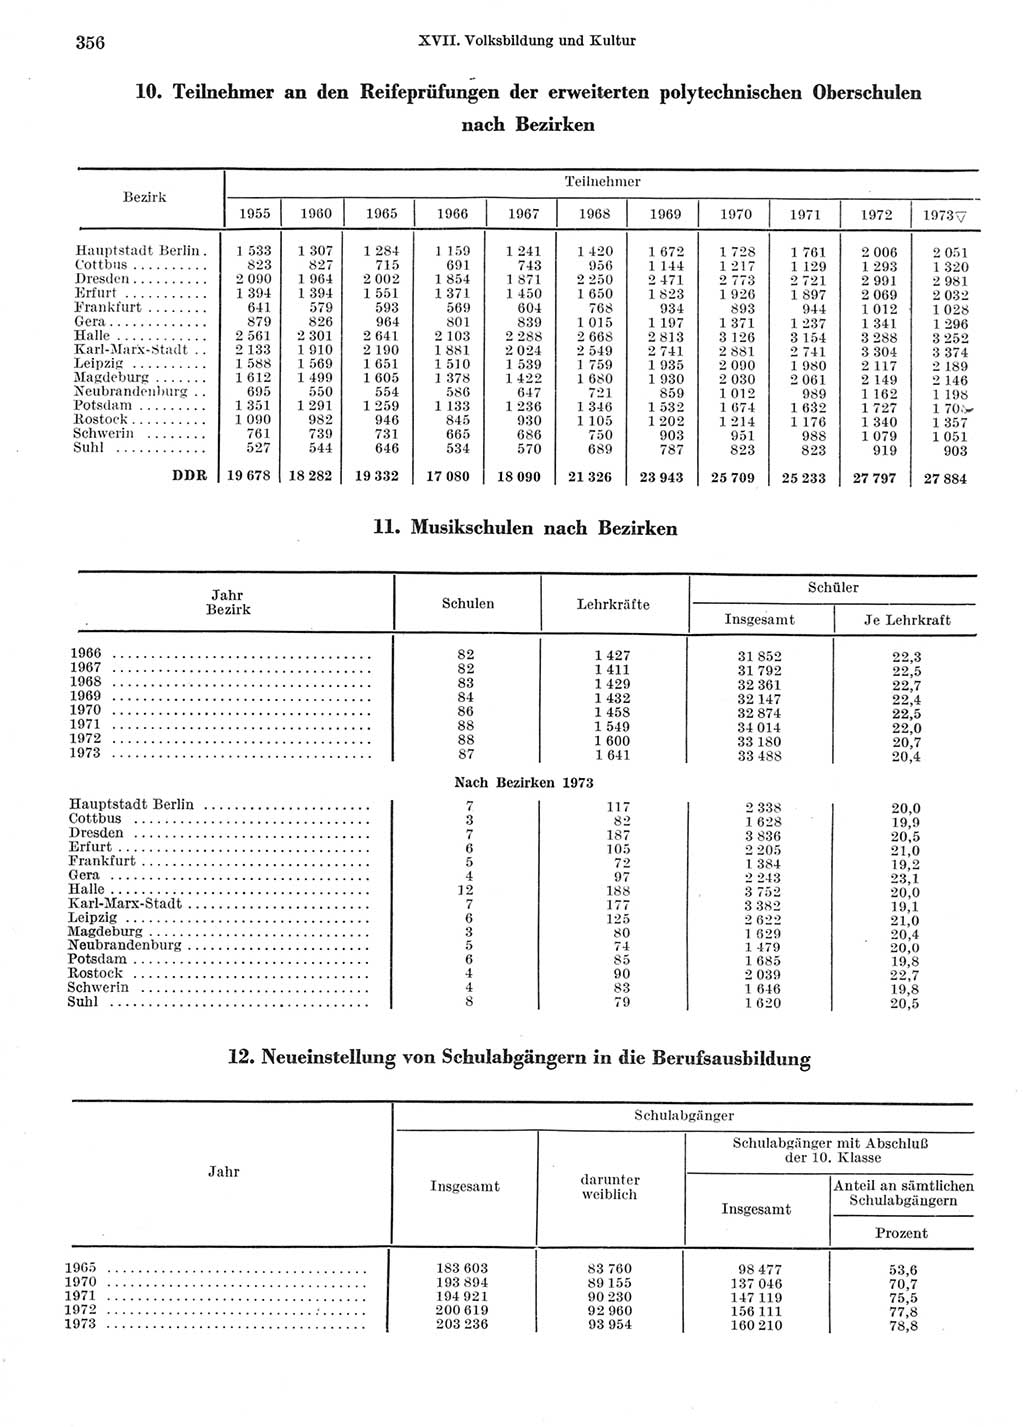 Statistisches Jahrbuch der Deutschen Demokratischen Republik (DDR) 1974, Seite 356 (Stat. Jb. DDR 1974, S. 356)